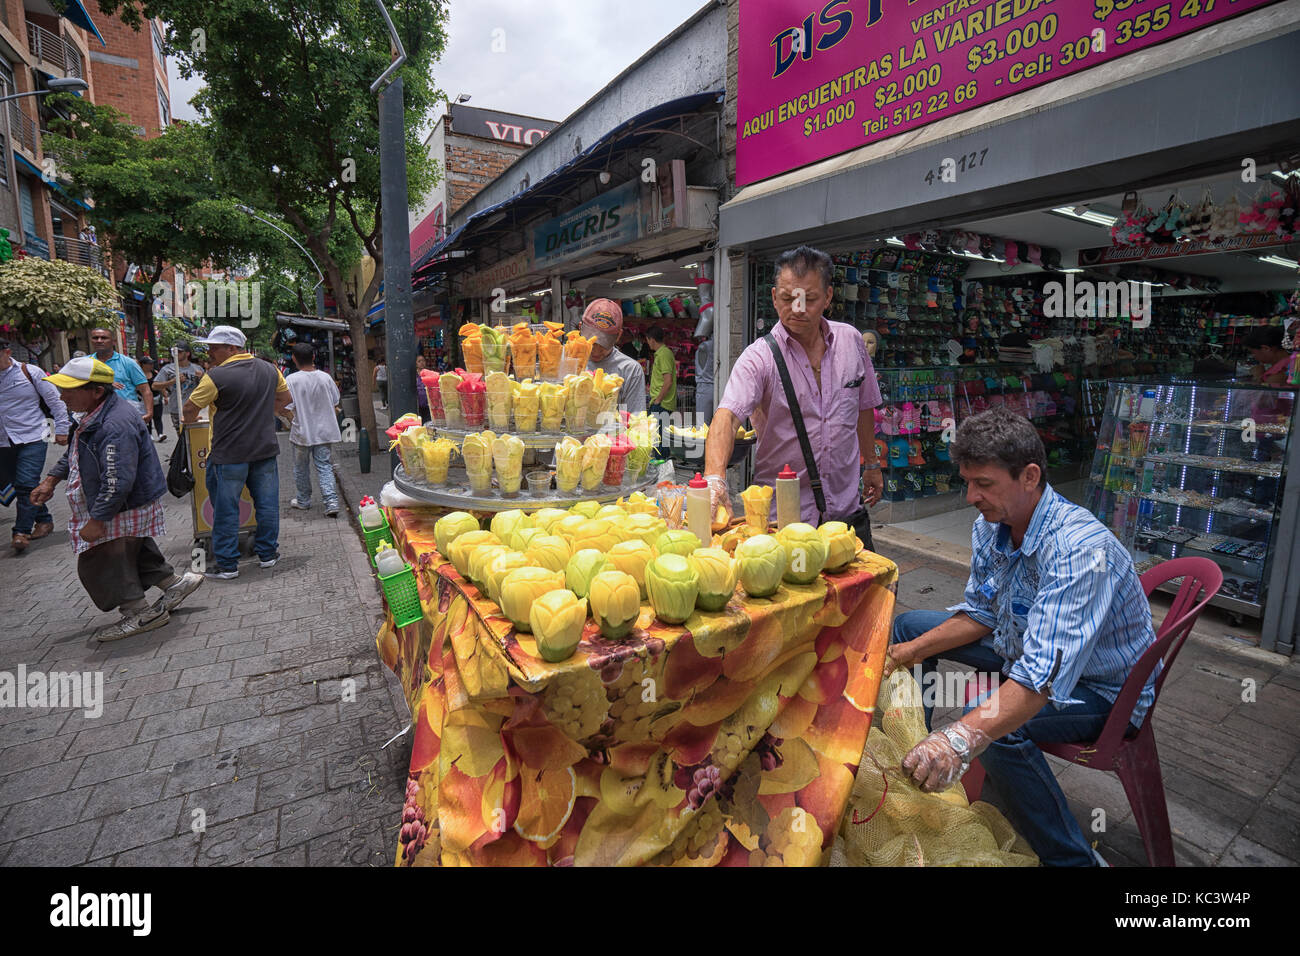 26 septembre 2017 Medellin, Colombie : la vente du vendeur de fruits de tasses que rafraîchissements dans le centre de la ville Banque D'Images